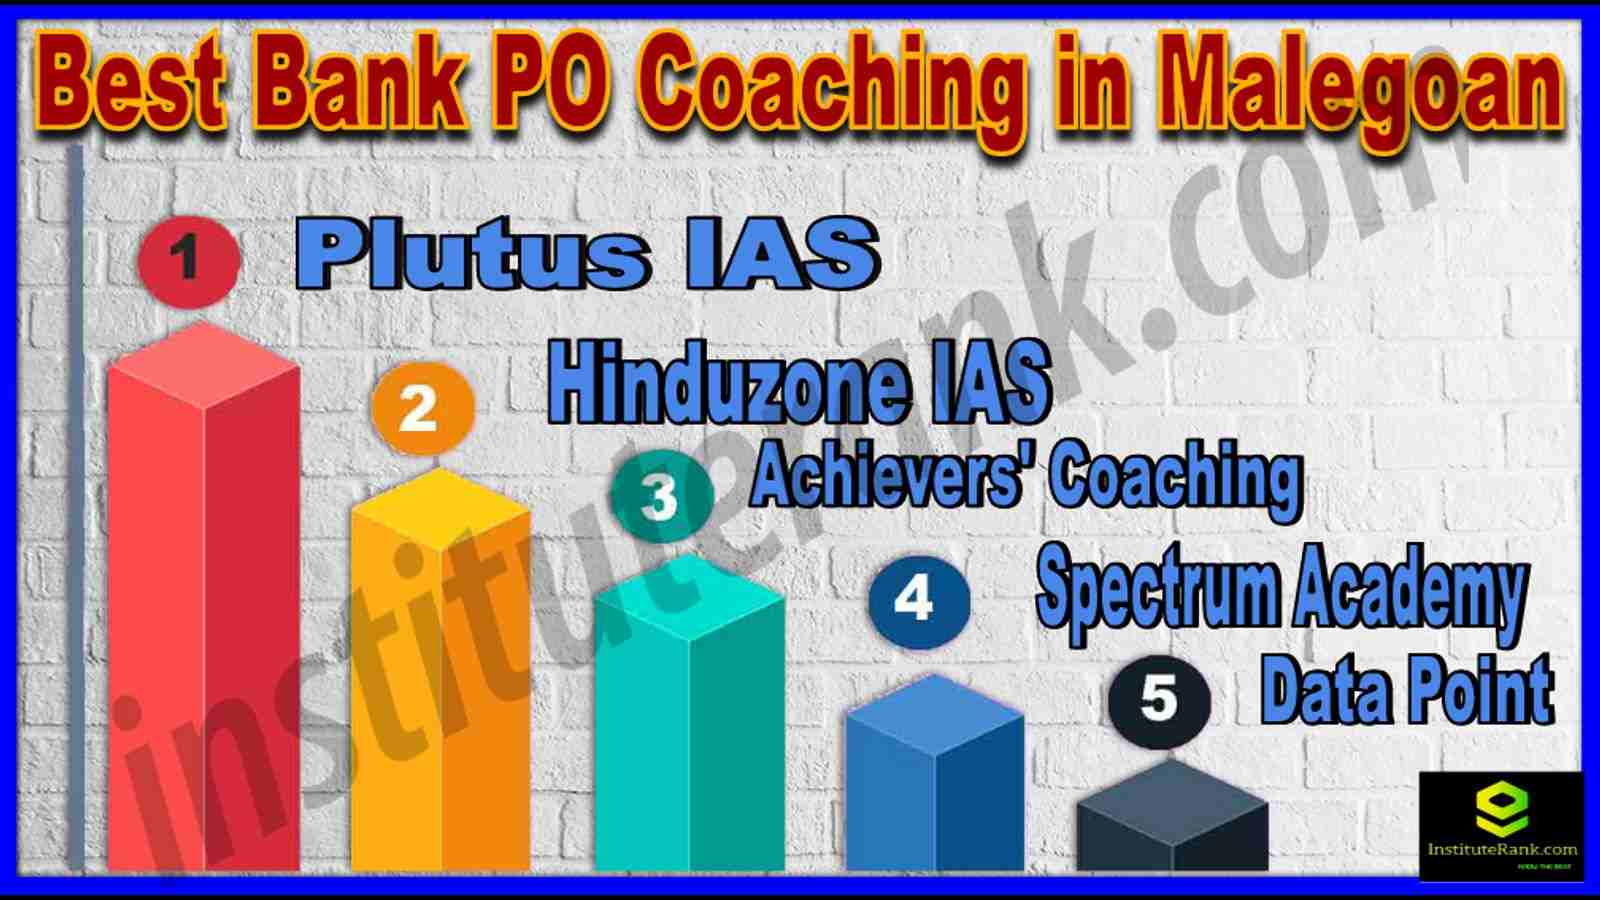 Best Bank PO Coaching in Malegoan